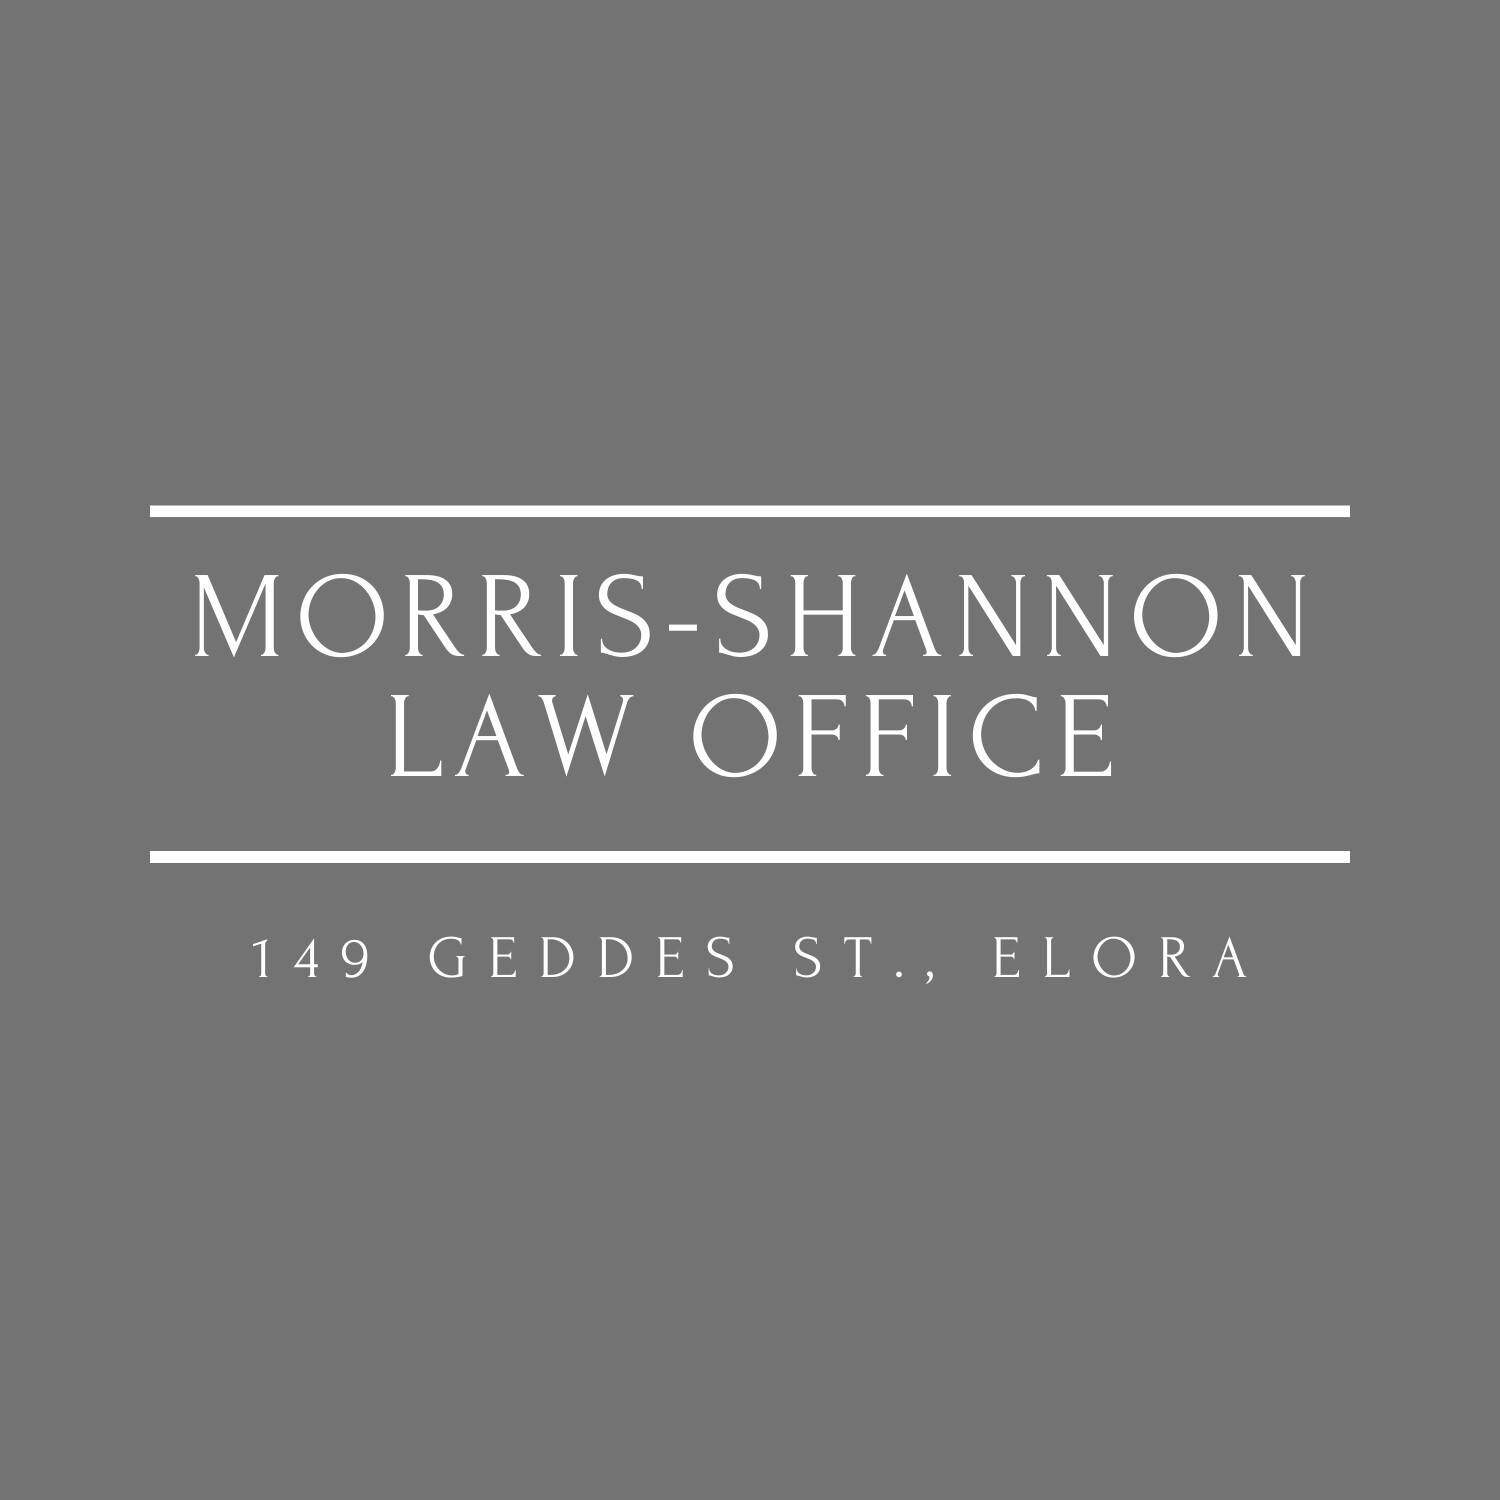 Morris- Shannon Law